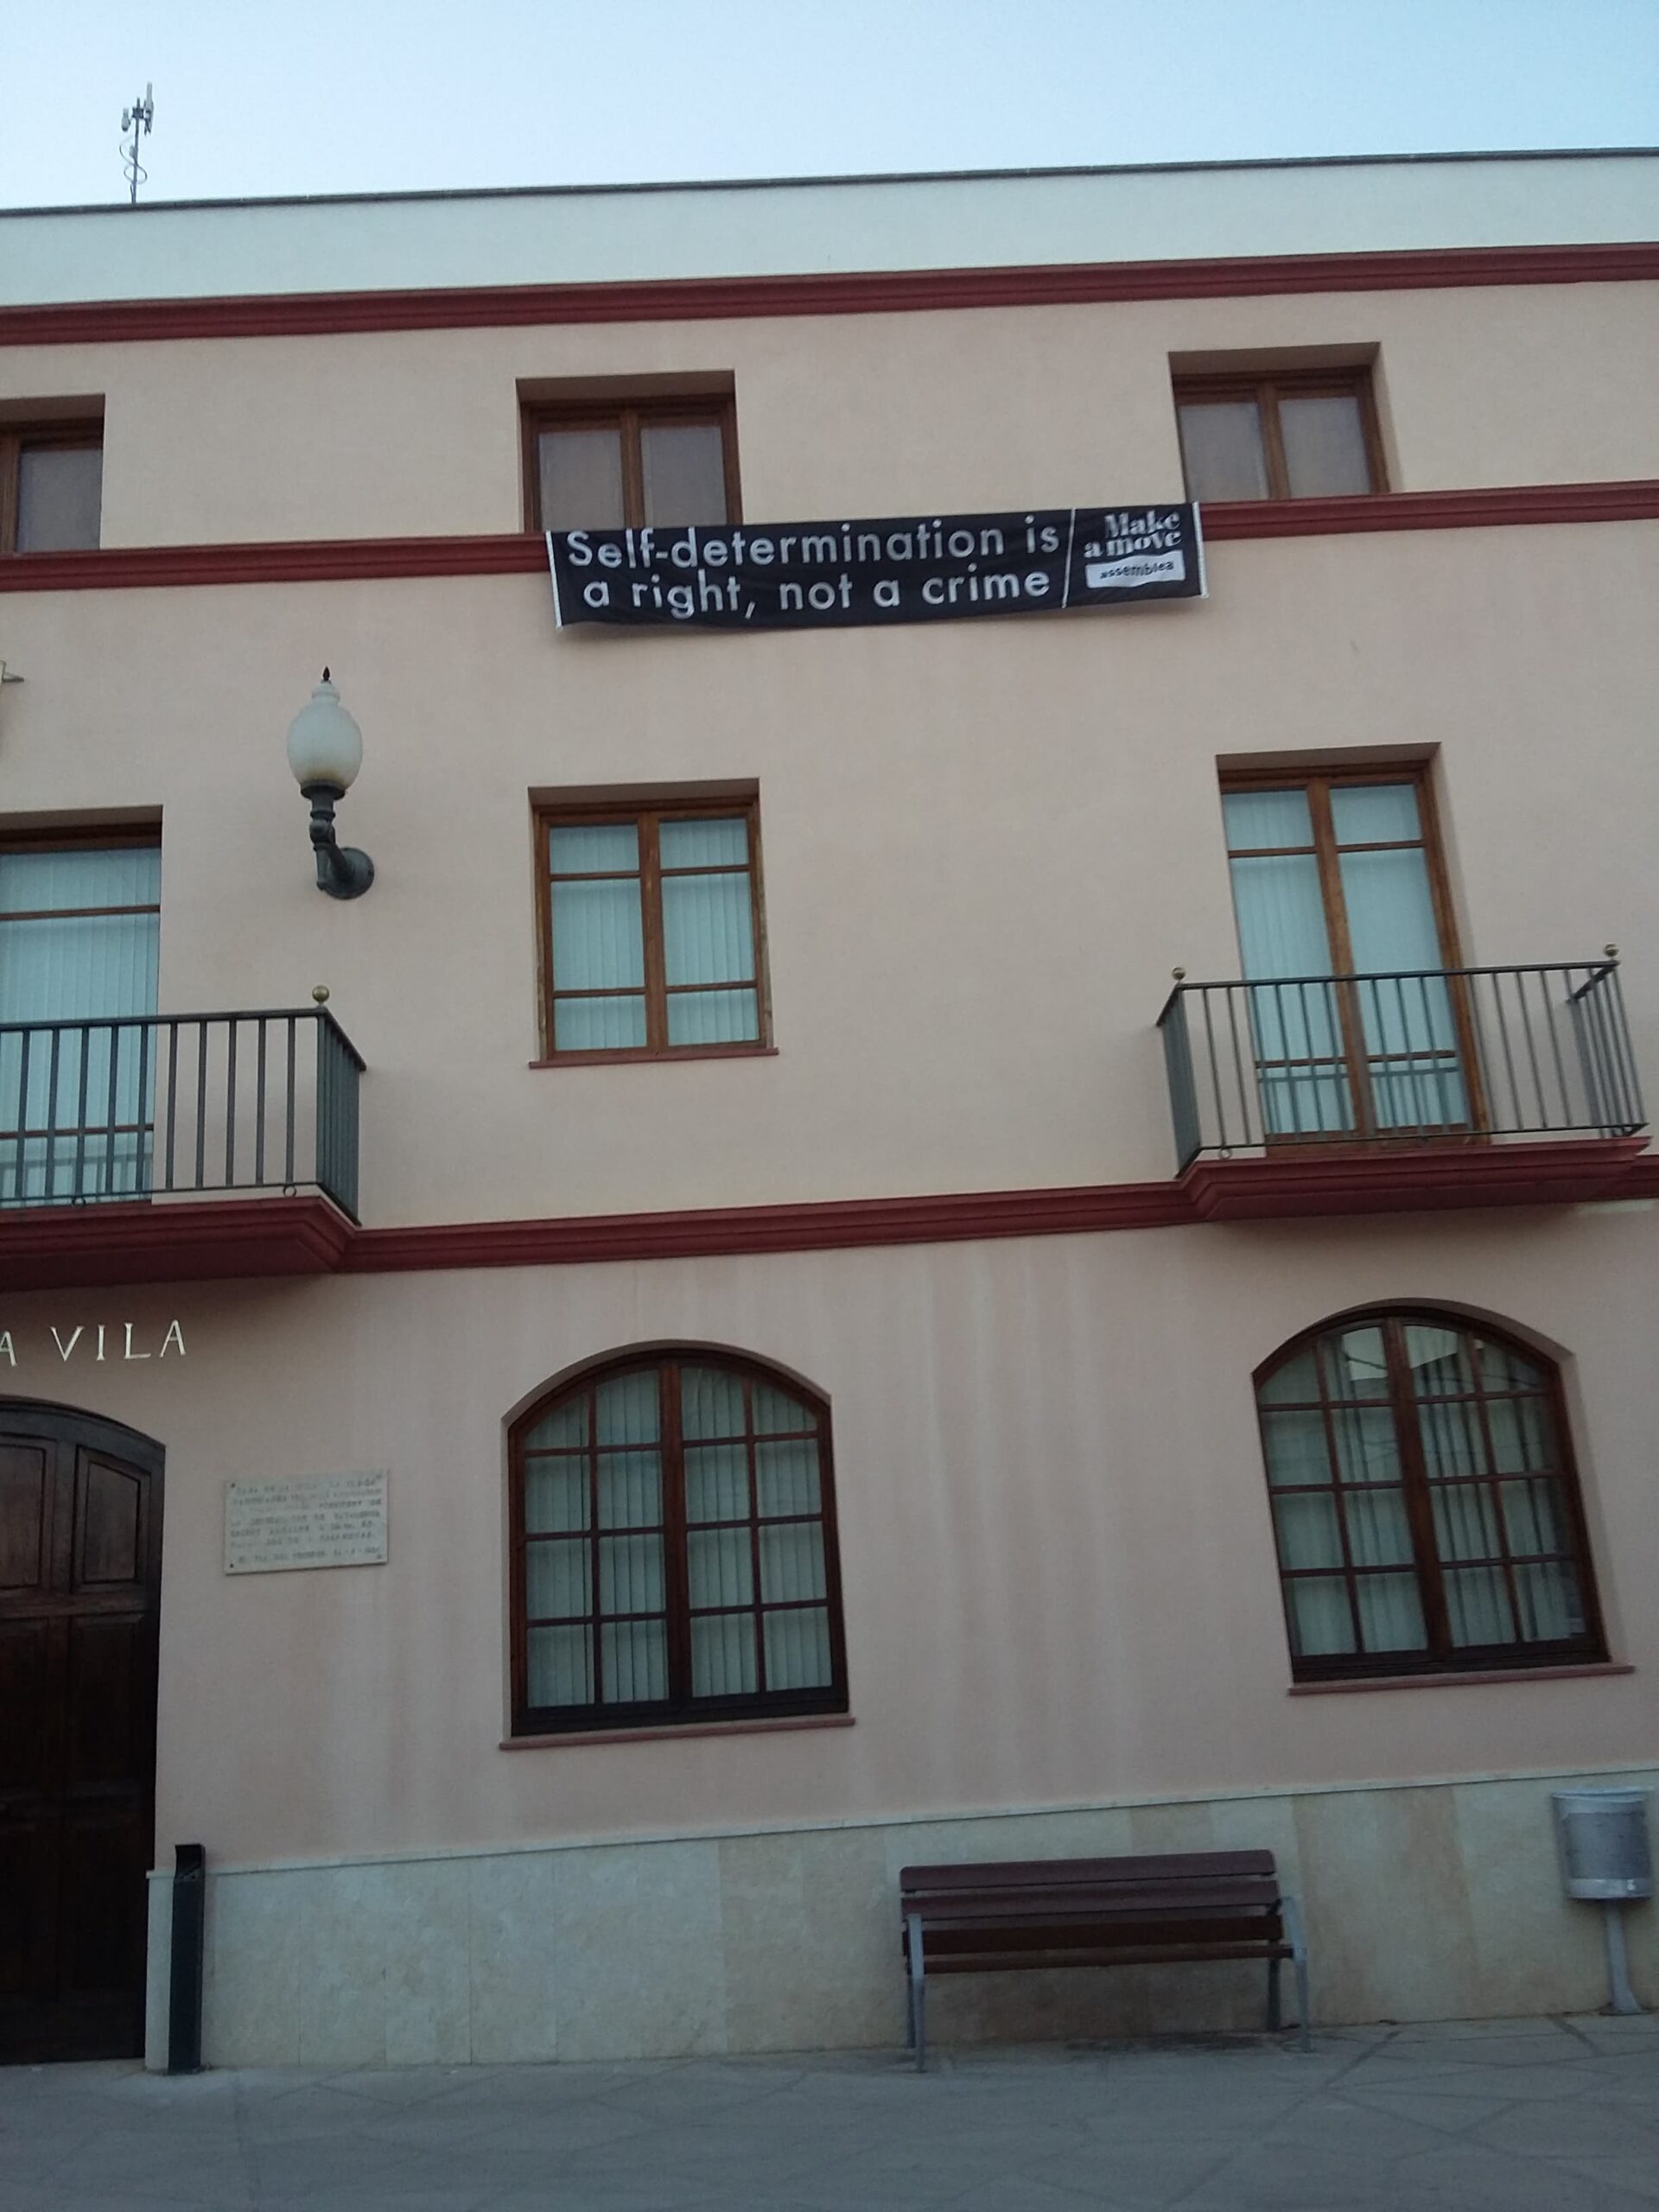 L'Ajuntament d'El Pla del Penedès torna a posar una pancarta a la fa